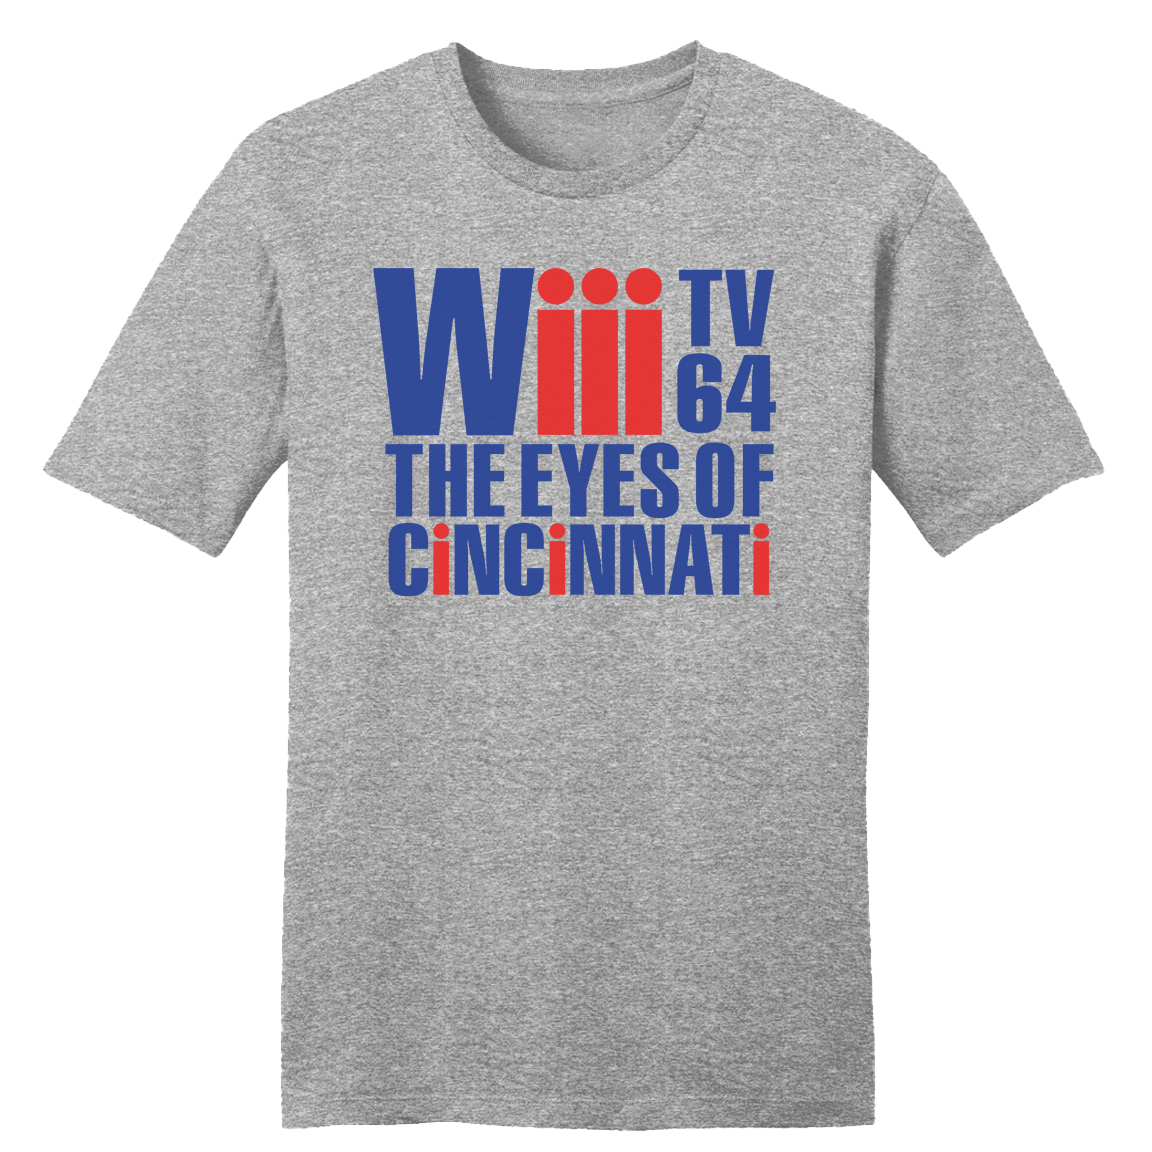 Wiii Channel 64 The Eyes of Cincinnati